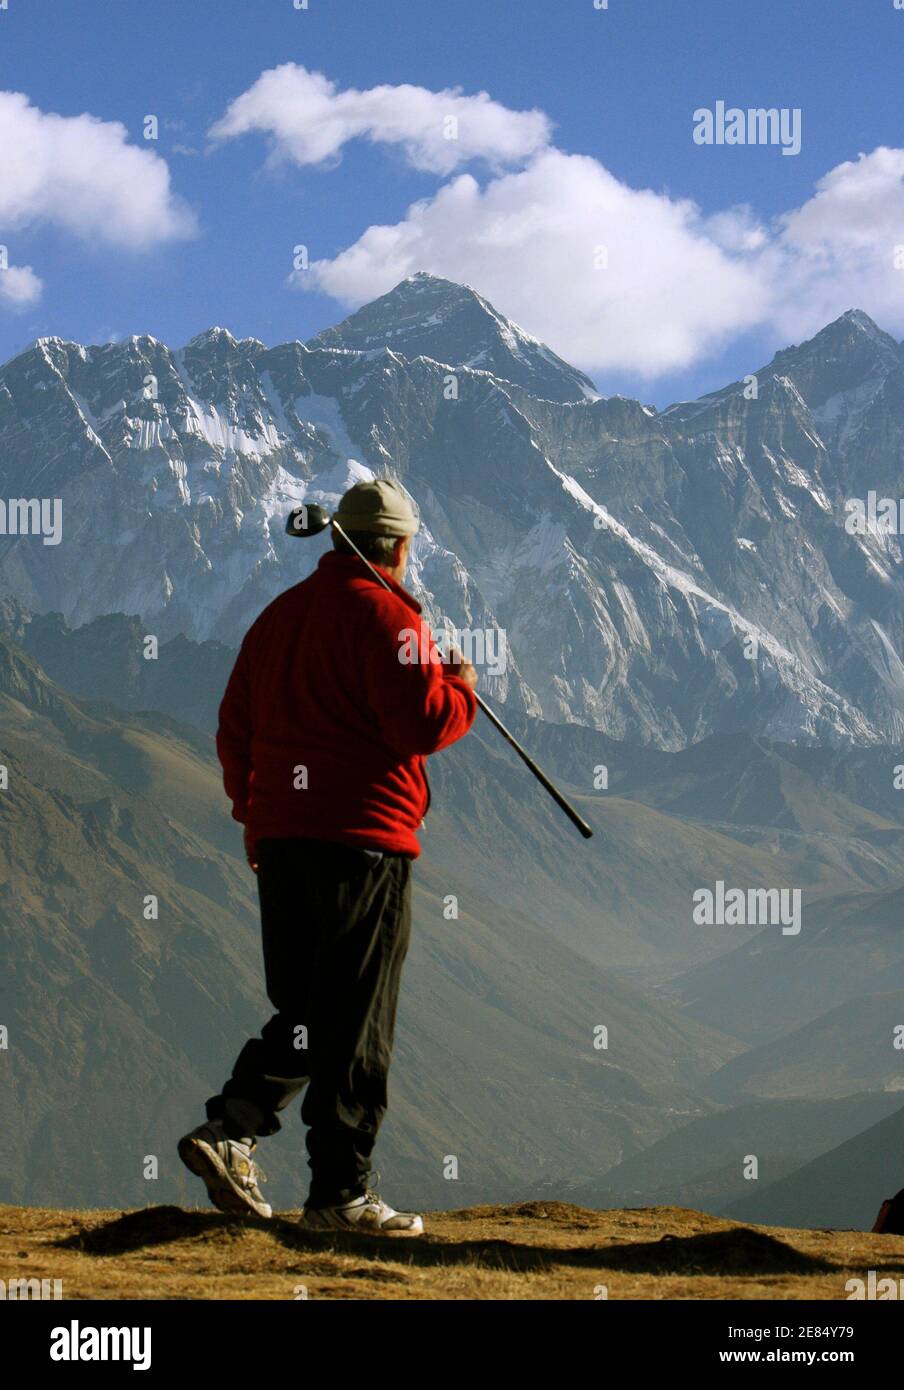 Ein Golfer bewundert den Blick vom Namche Bazar am 5. März 2009 auf den Mount Everest, den höchsten Gipfel der Welt mit 8,848 Metern (29,029 ft). REUTERS/Gopal Chitrakar (NEPAL) Stockfoto